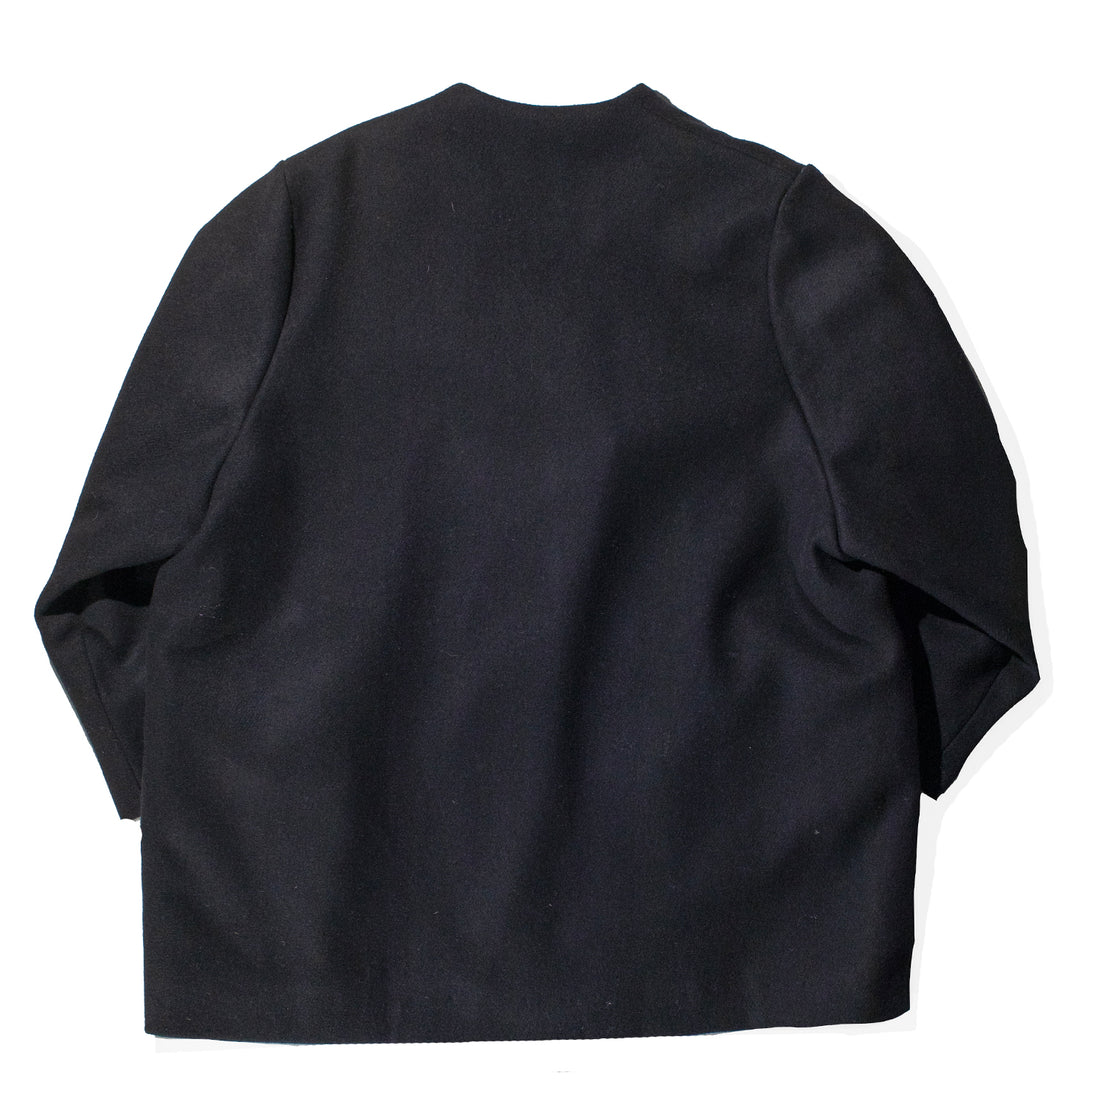 Kaarem Keiki Overlap Pocket Coat in Black